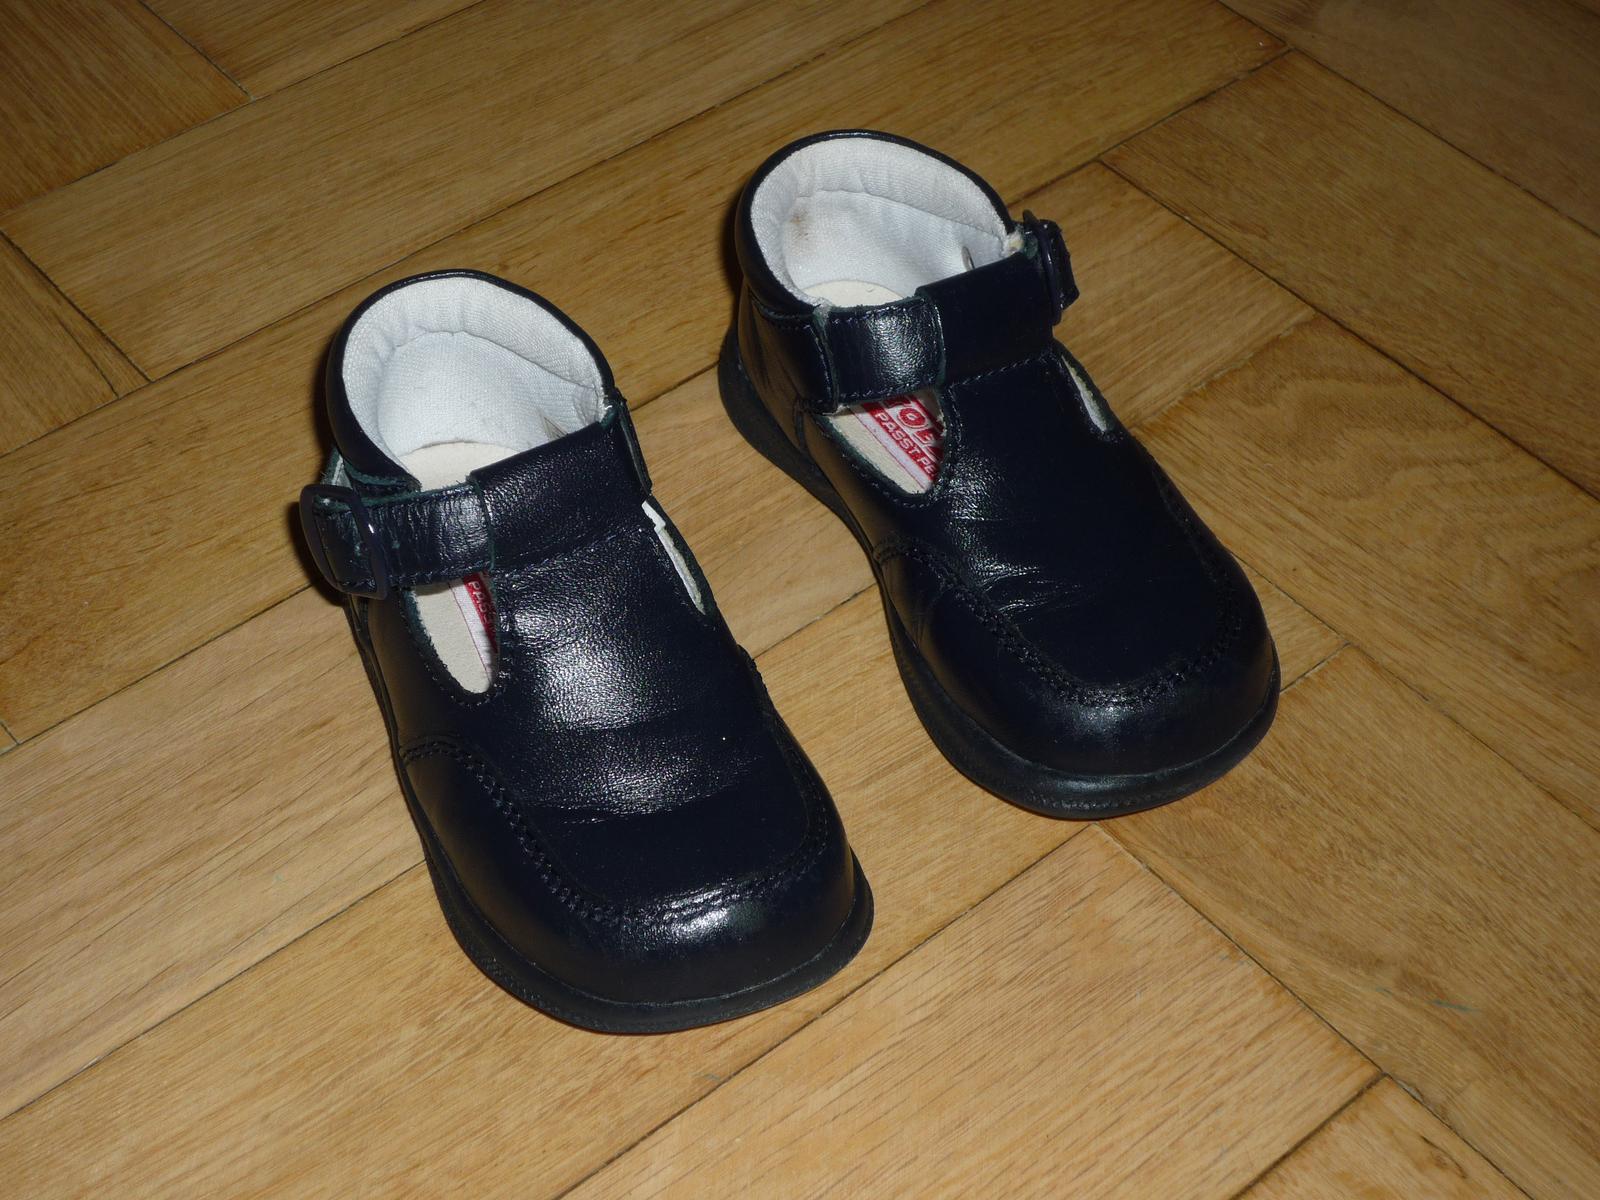 černe společenské boty - Obrázek č. 1